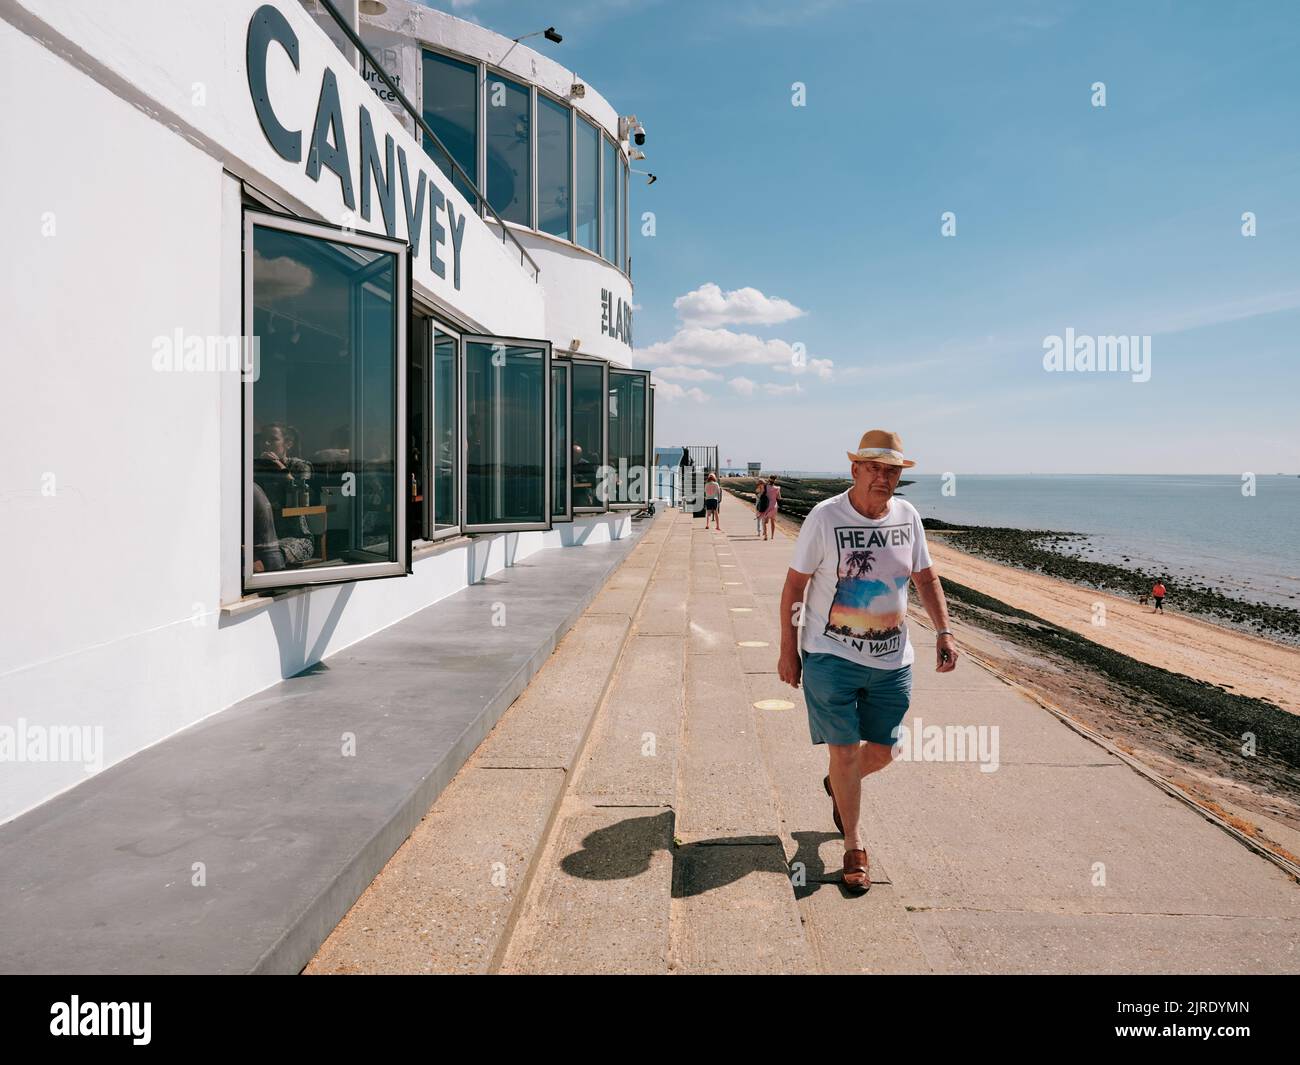 Sommermann mit Himmelshemd, der am modernistischen Labworth Cafe vorbeiging, Canvey Island, Thames Estuary, Essex, England, Großbritannien - Sommerleben Stockfoto